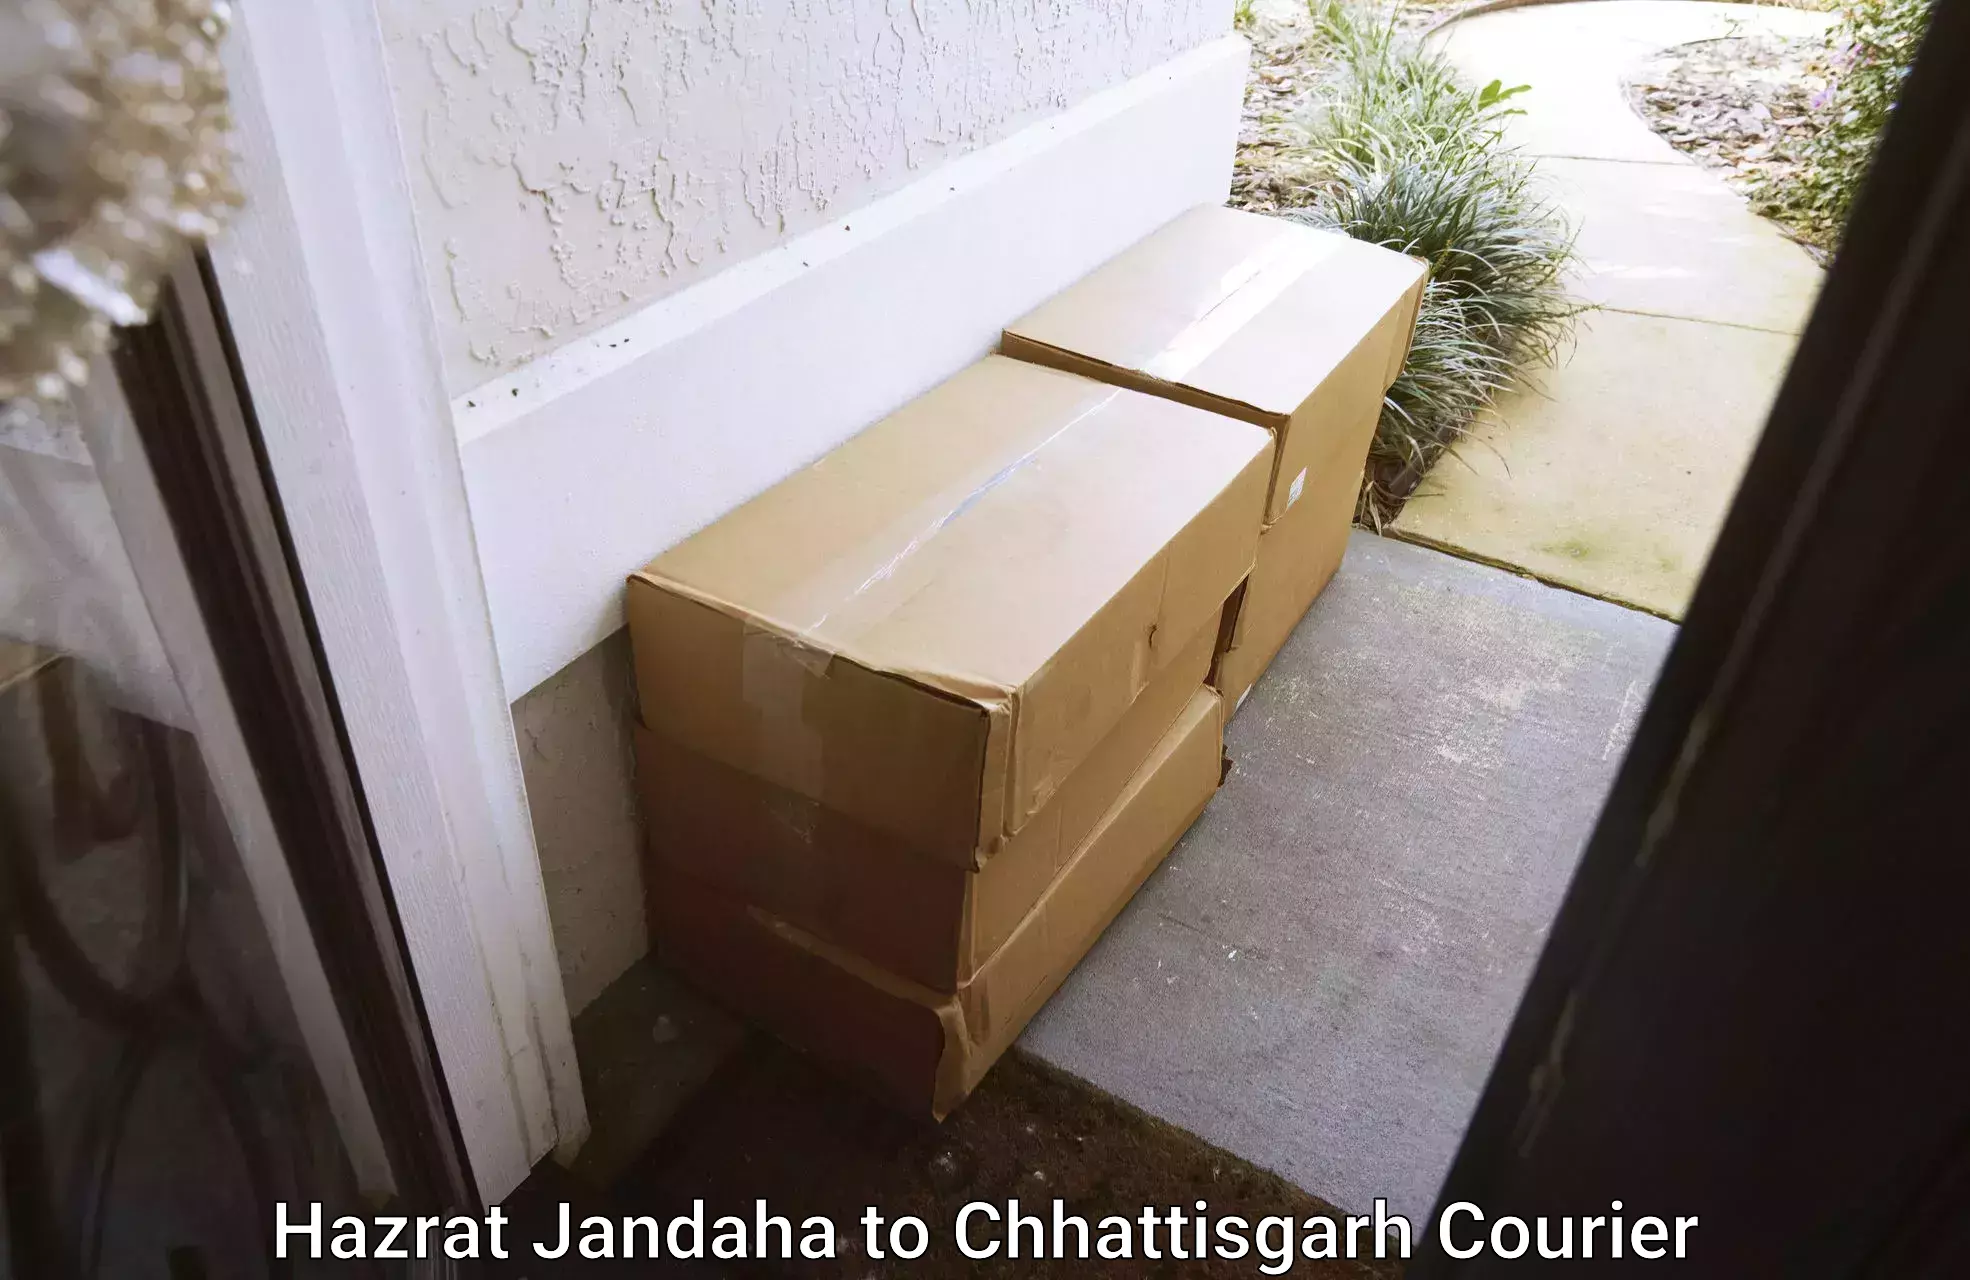 Household moving and storage in Hazrat Jandaha to Raigarh Chhattisgarh